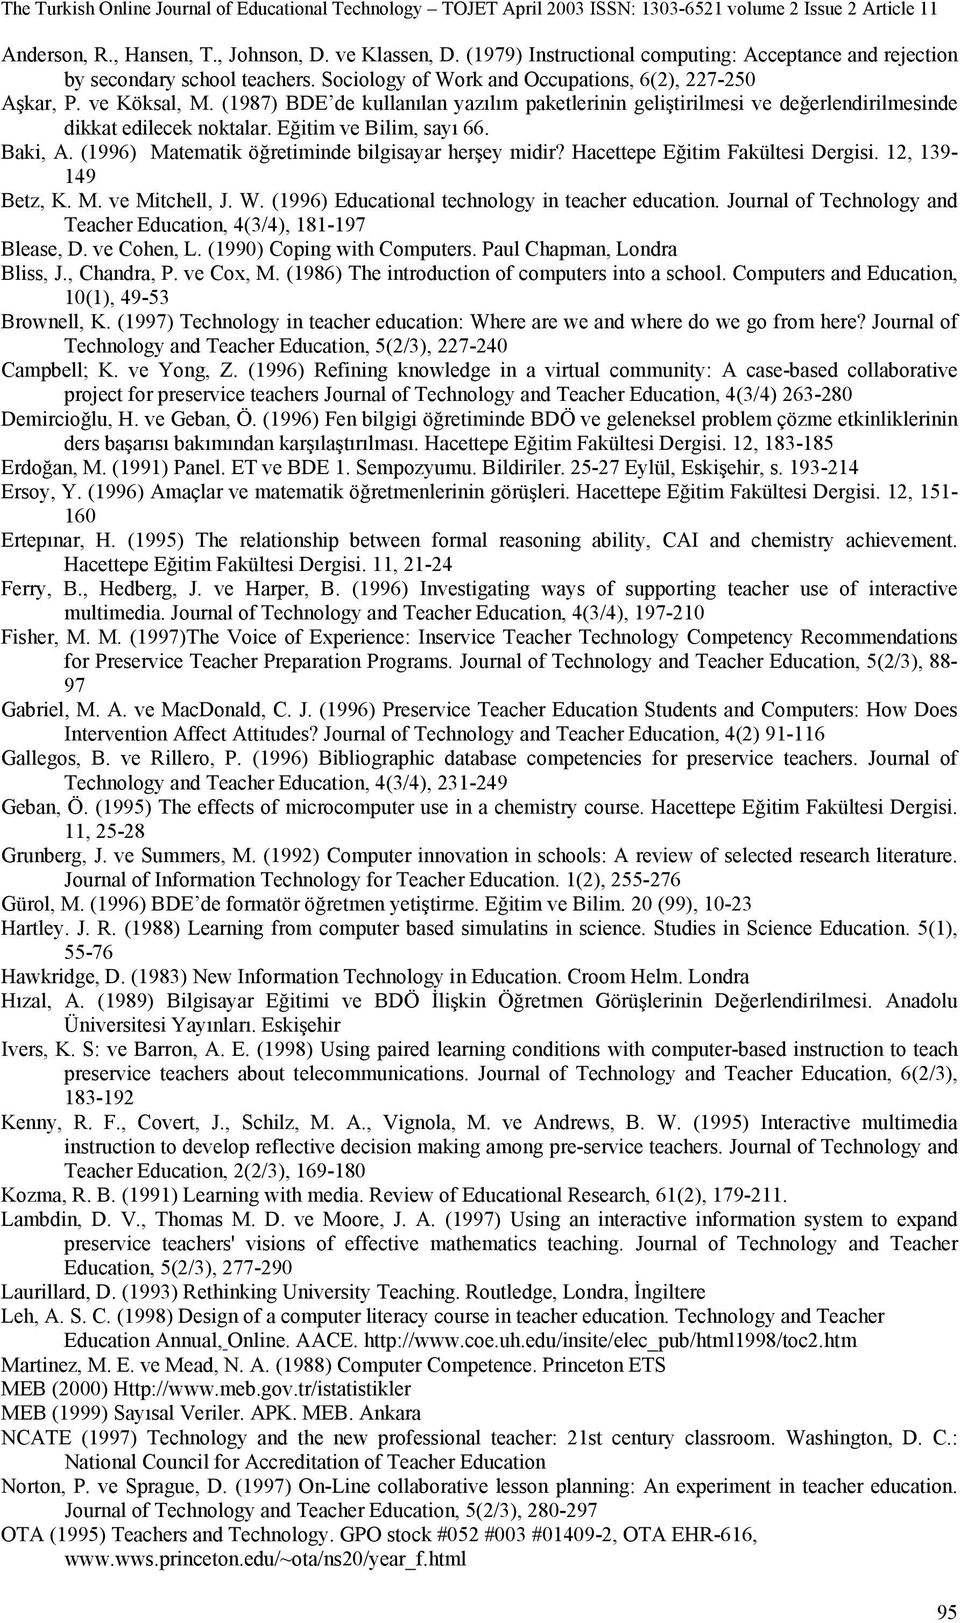 (1996) Matematik öğretiminde bilgisayar herşey midir? Hacettepe Eğitim Fakültesi Dergisi. 12, 139-149 Betz, K. M. ve Mitchell, J. W. (1996) Educational technology in teacher education.